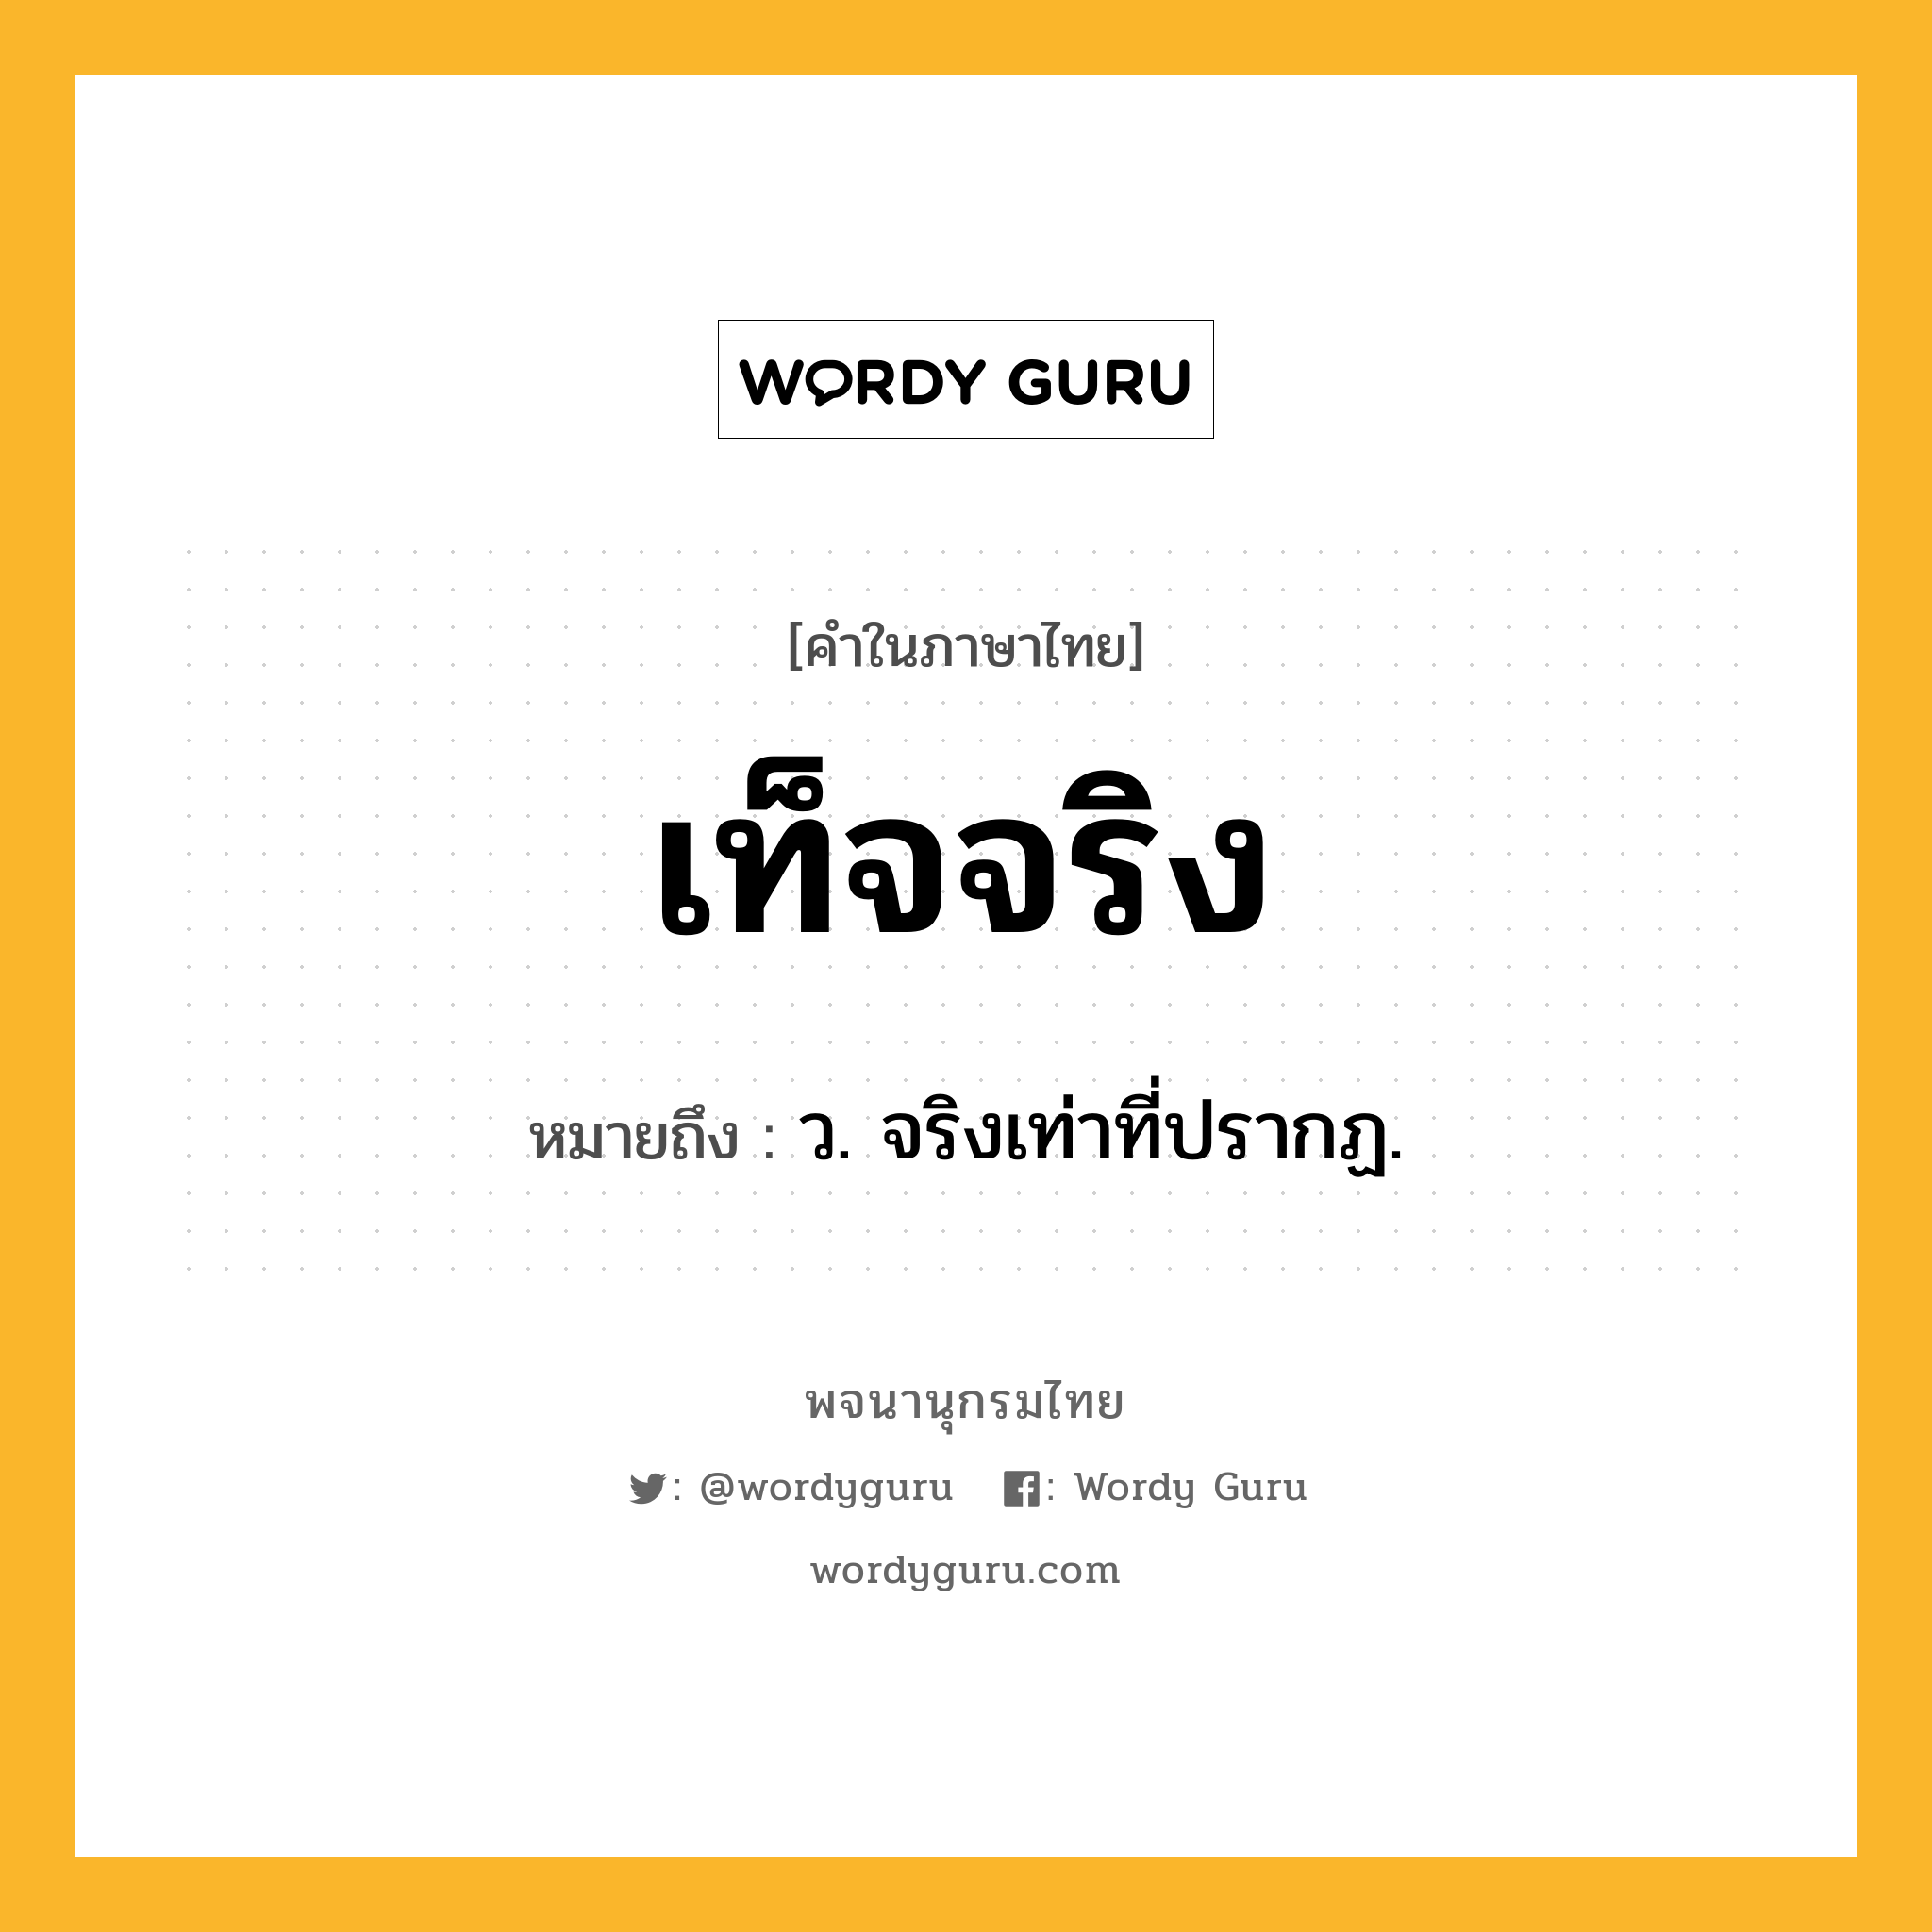 เท็จจริง ความหมาย หมายถึงอะไร?, คำในภาษาไทย เท็จจริง หมายถึง ว. จริงเท่าที่ปรากฏ.